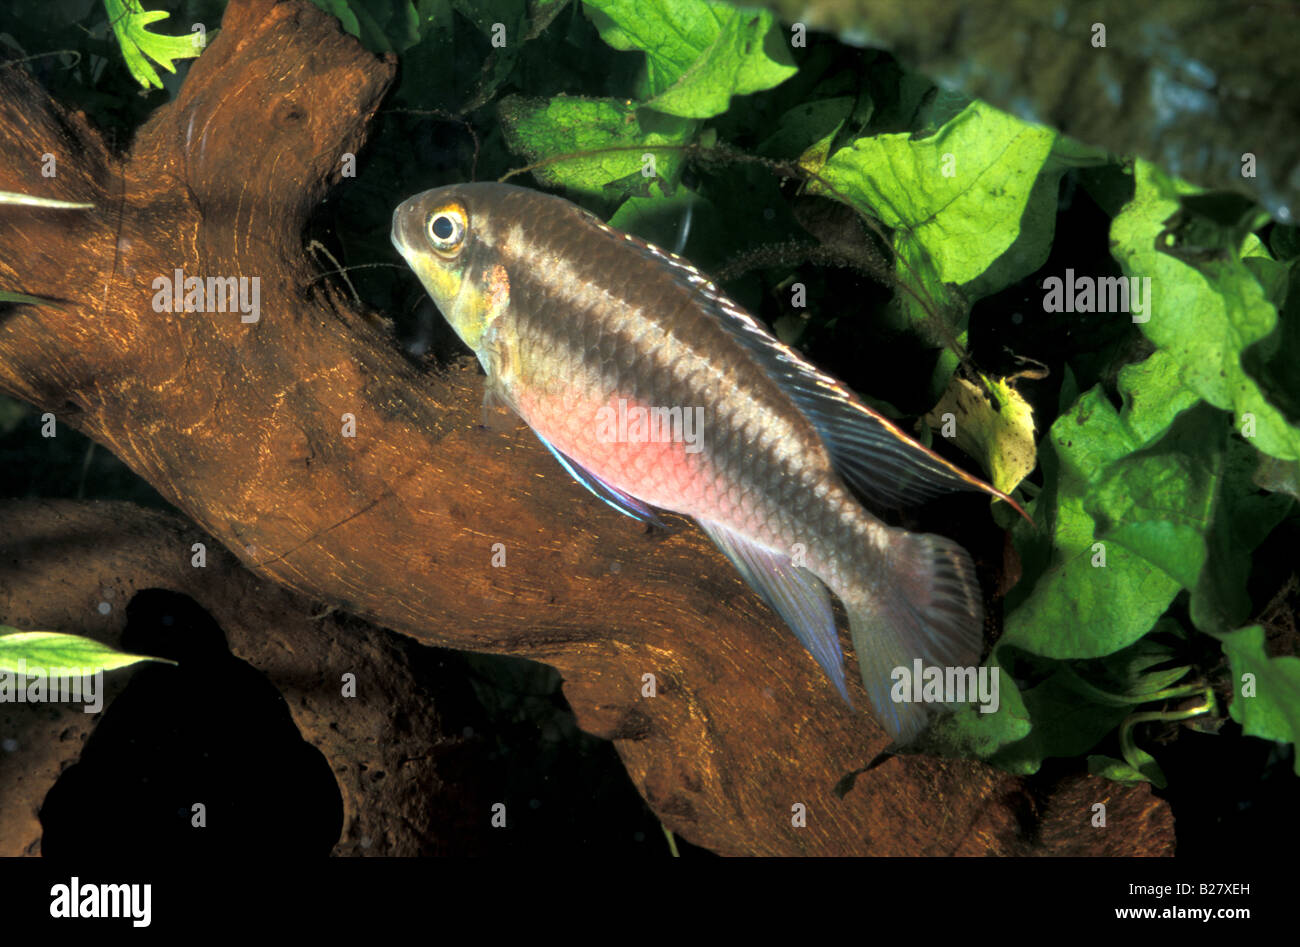 Pelvicachromis pulcher, Dward Cichlid, Africa Stock Photo